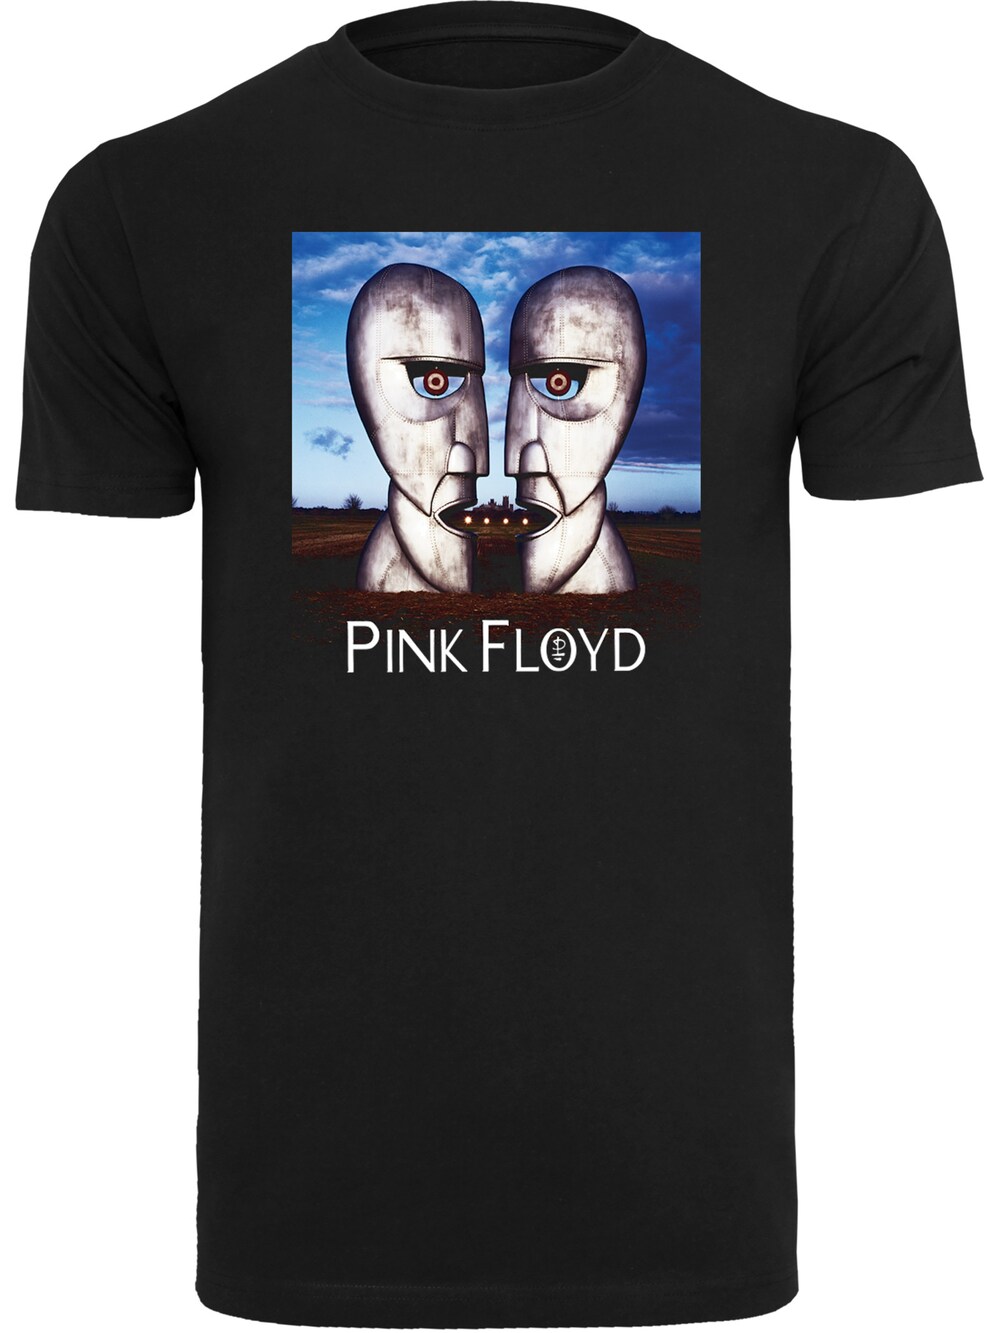 Футболка F4Nt4Stic Pink Floyd The Division Bell, черный pink floyd pink floyd the division bell 2 lp 180 gr